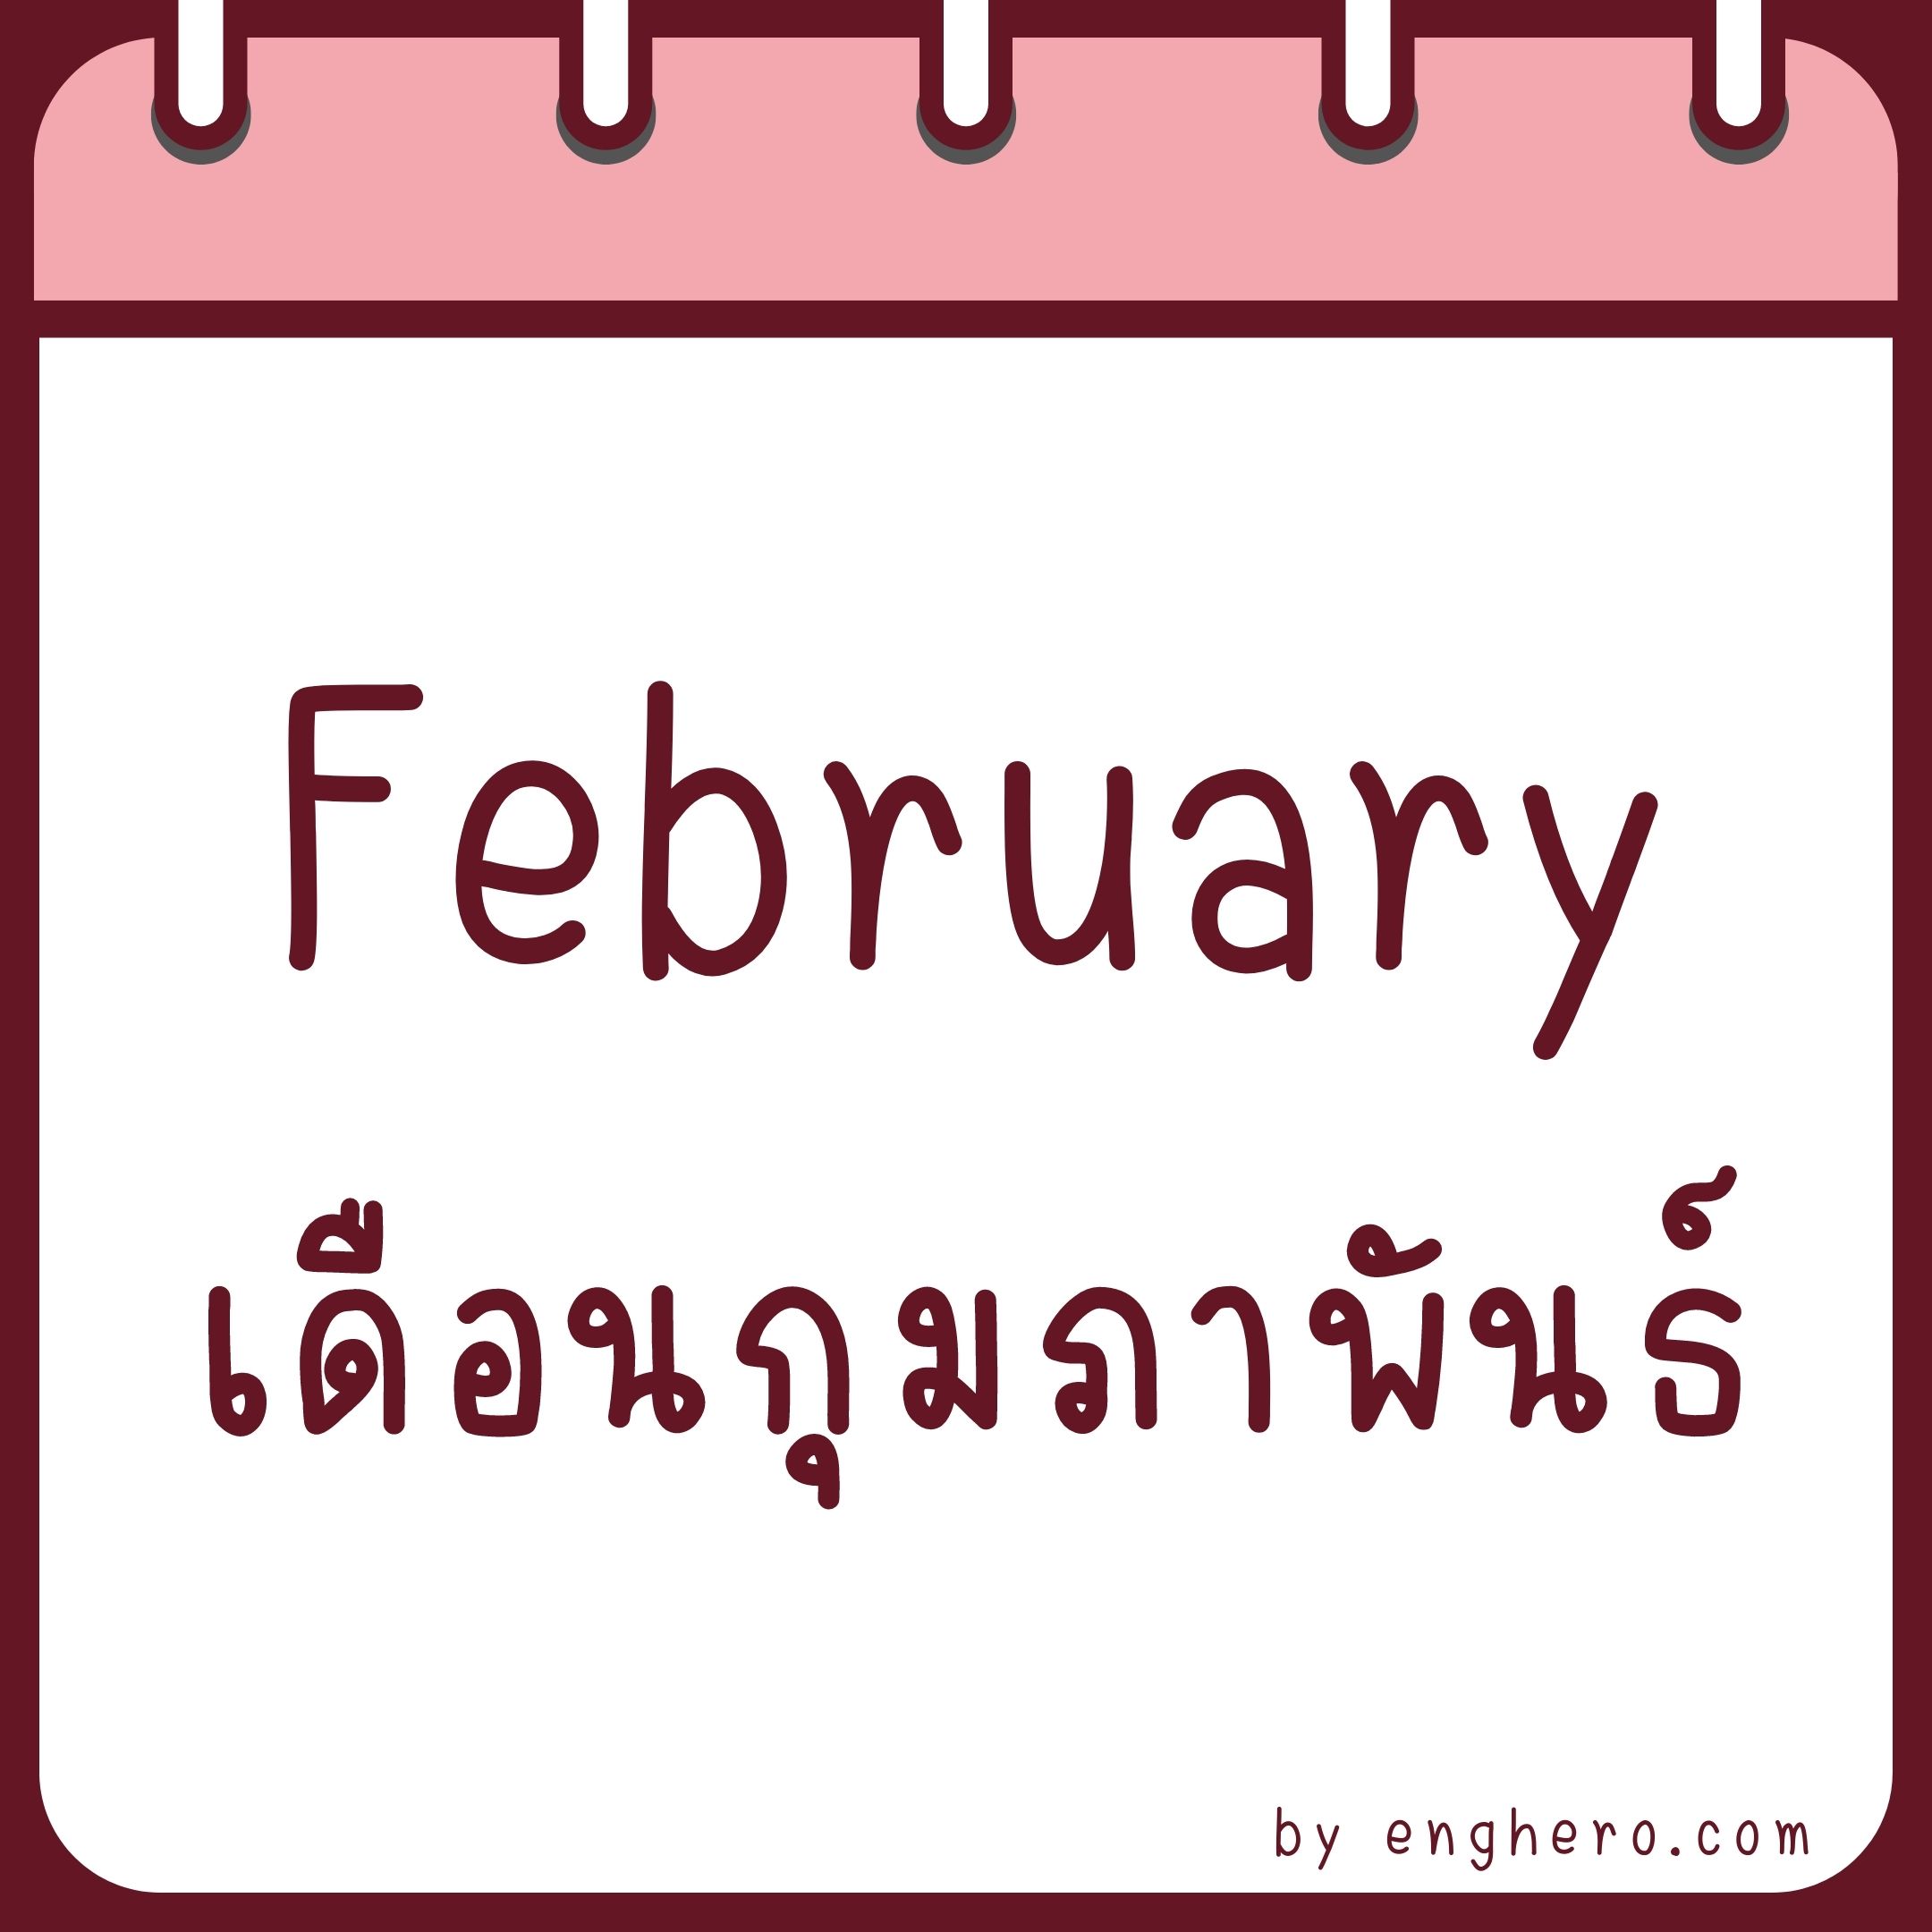 เดือนกุมภาพันธ์ ภาษาอังกฤษ คือ February